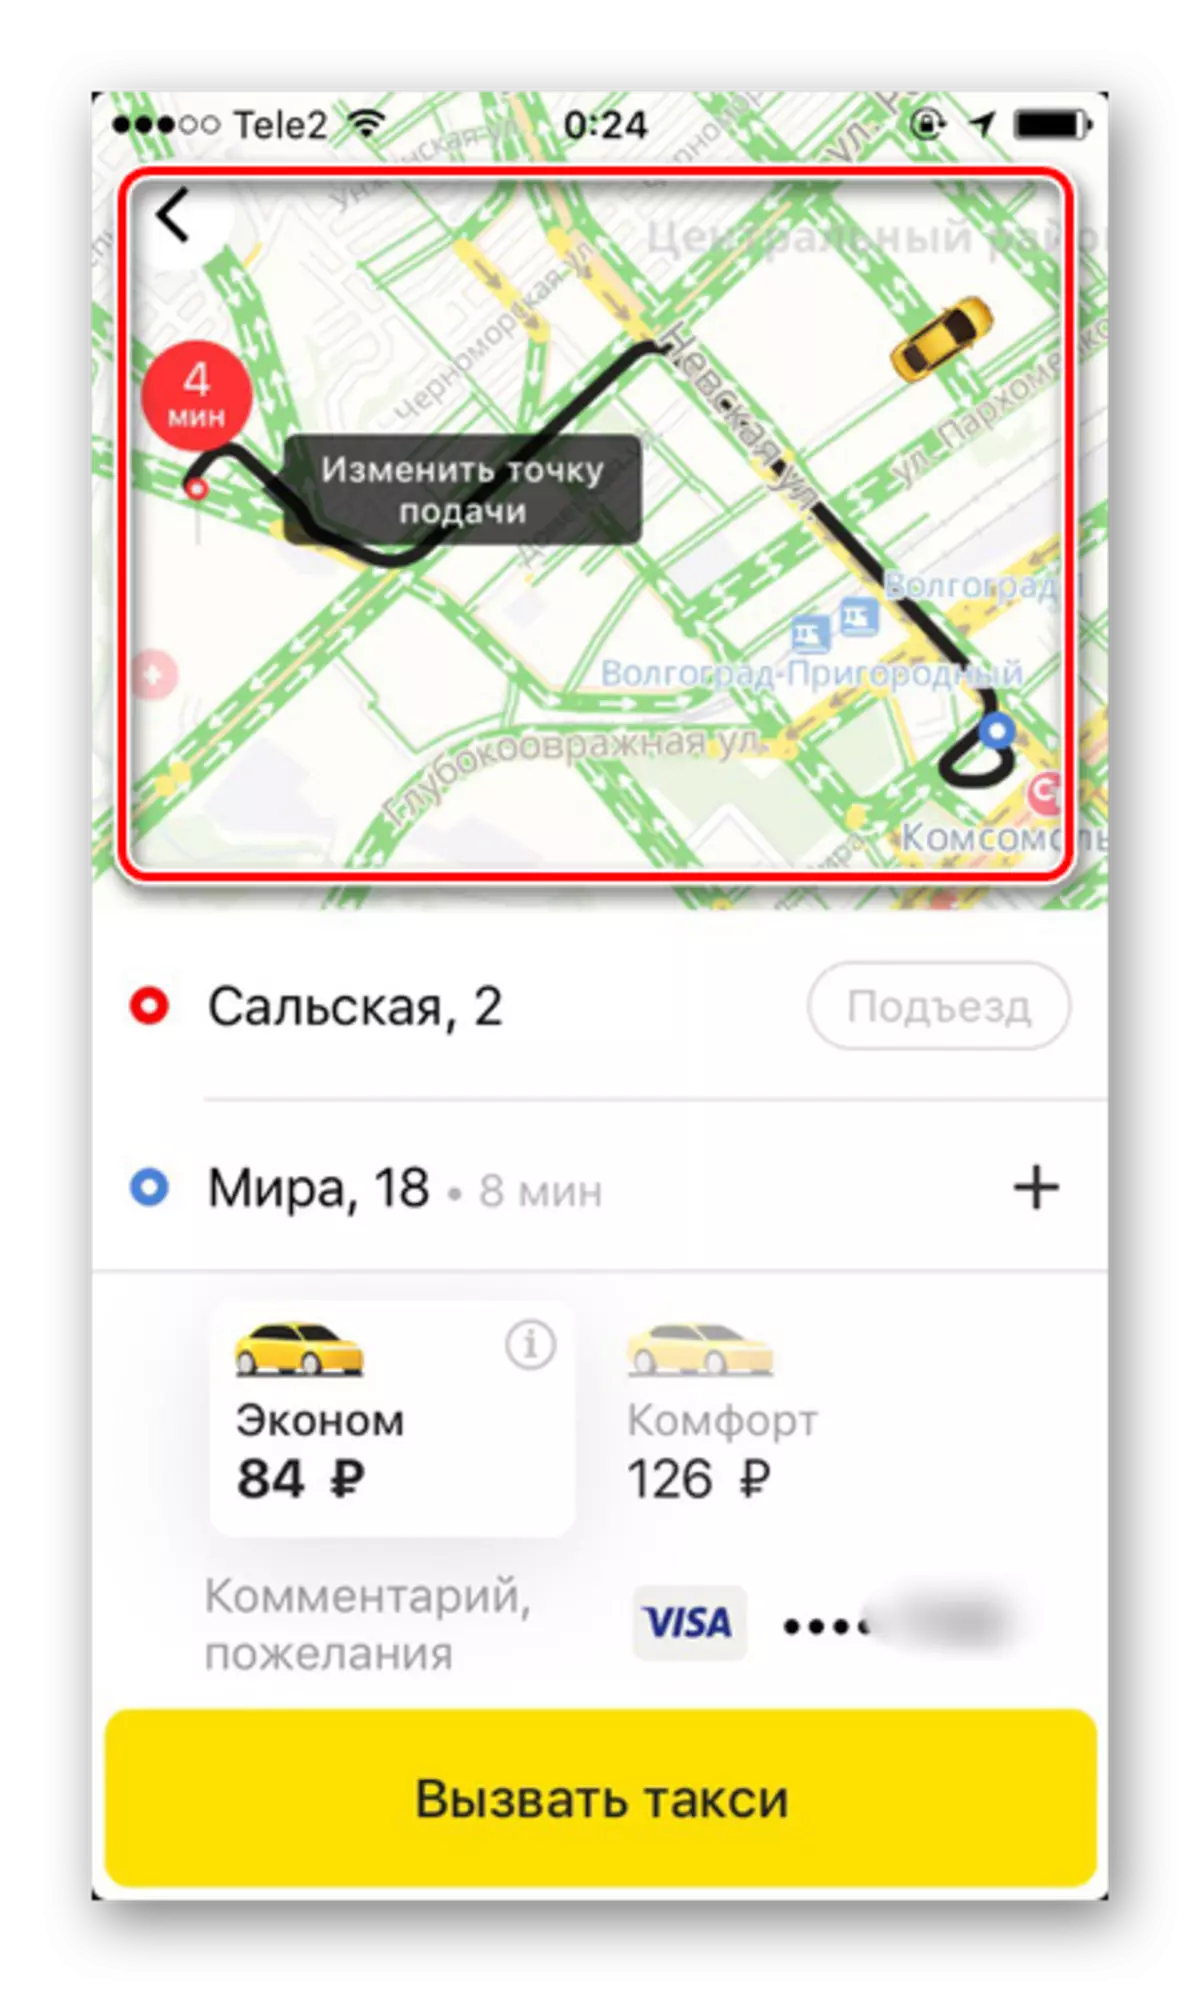 iPhone ပေါ်မှာ Yandex.Taxi လျှောက်လွှာအတွက် Predified လမ်းကြောင်း